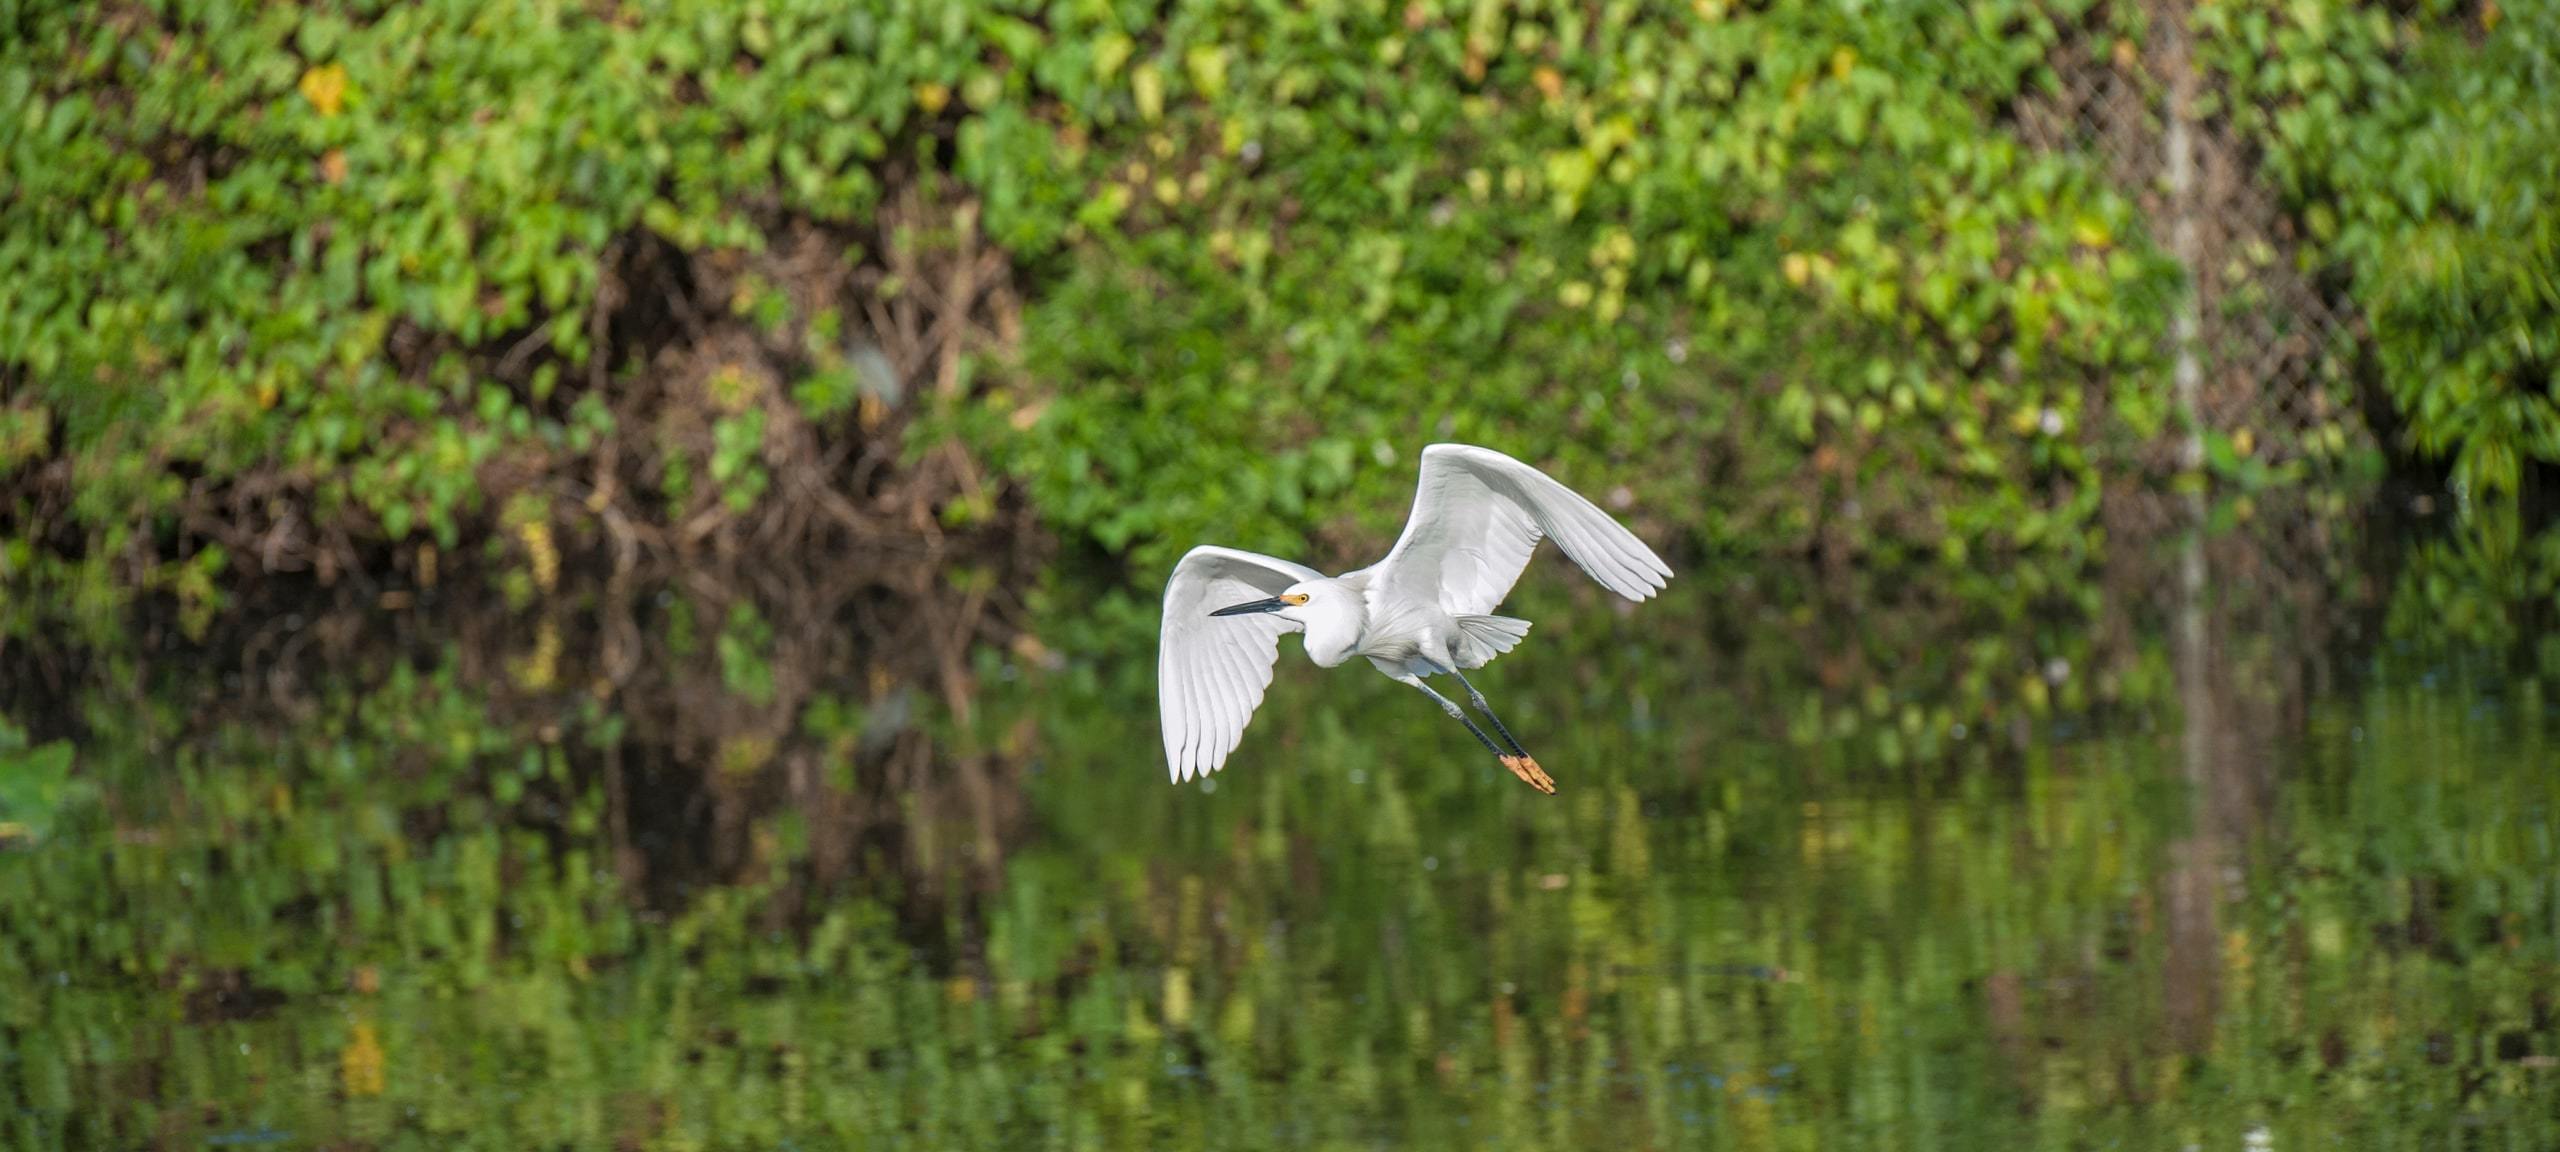 Egret flying over pond at Gatorland, Hunters Creek, Florida